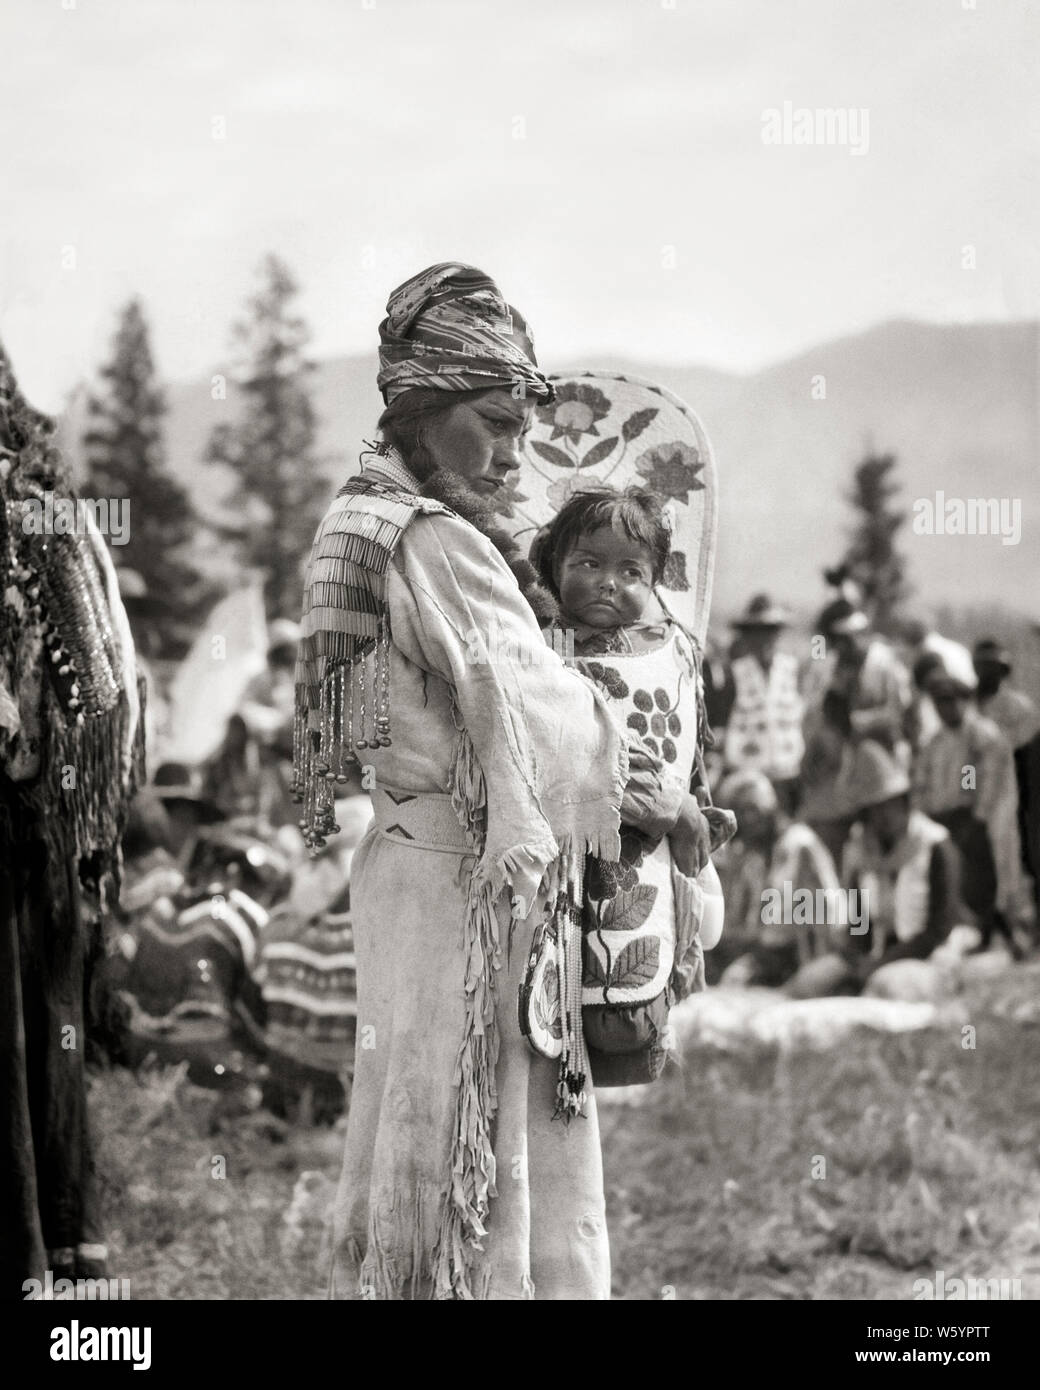 1920 1930 Native American STONEY Sioux Indian mujer madre en biselado  vestido de BUCKSKIN CELEBRACIÓN BABY BOY CHICA EN PAPOOSE CANADA - i59  HAR001 HARS HEMBRAS CASA RURAL LA VIDA ejemplar espacio